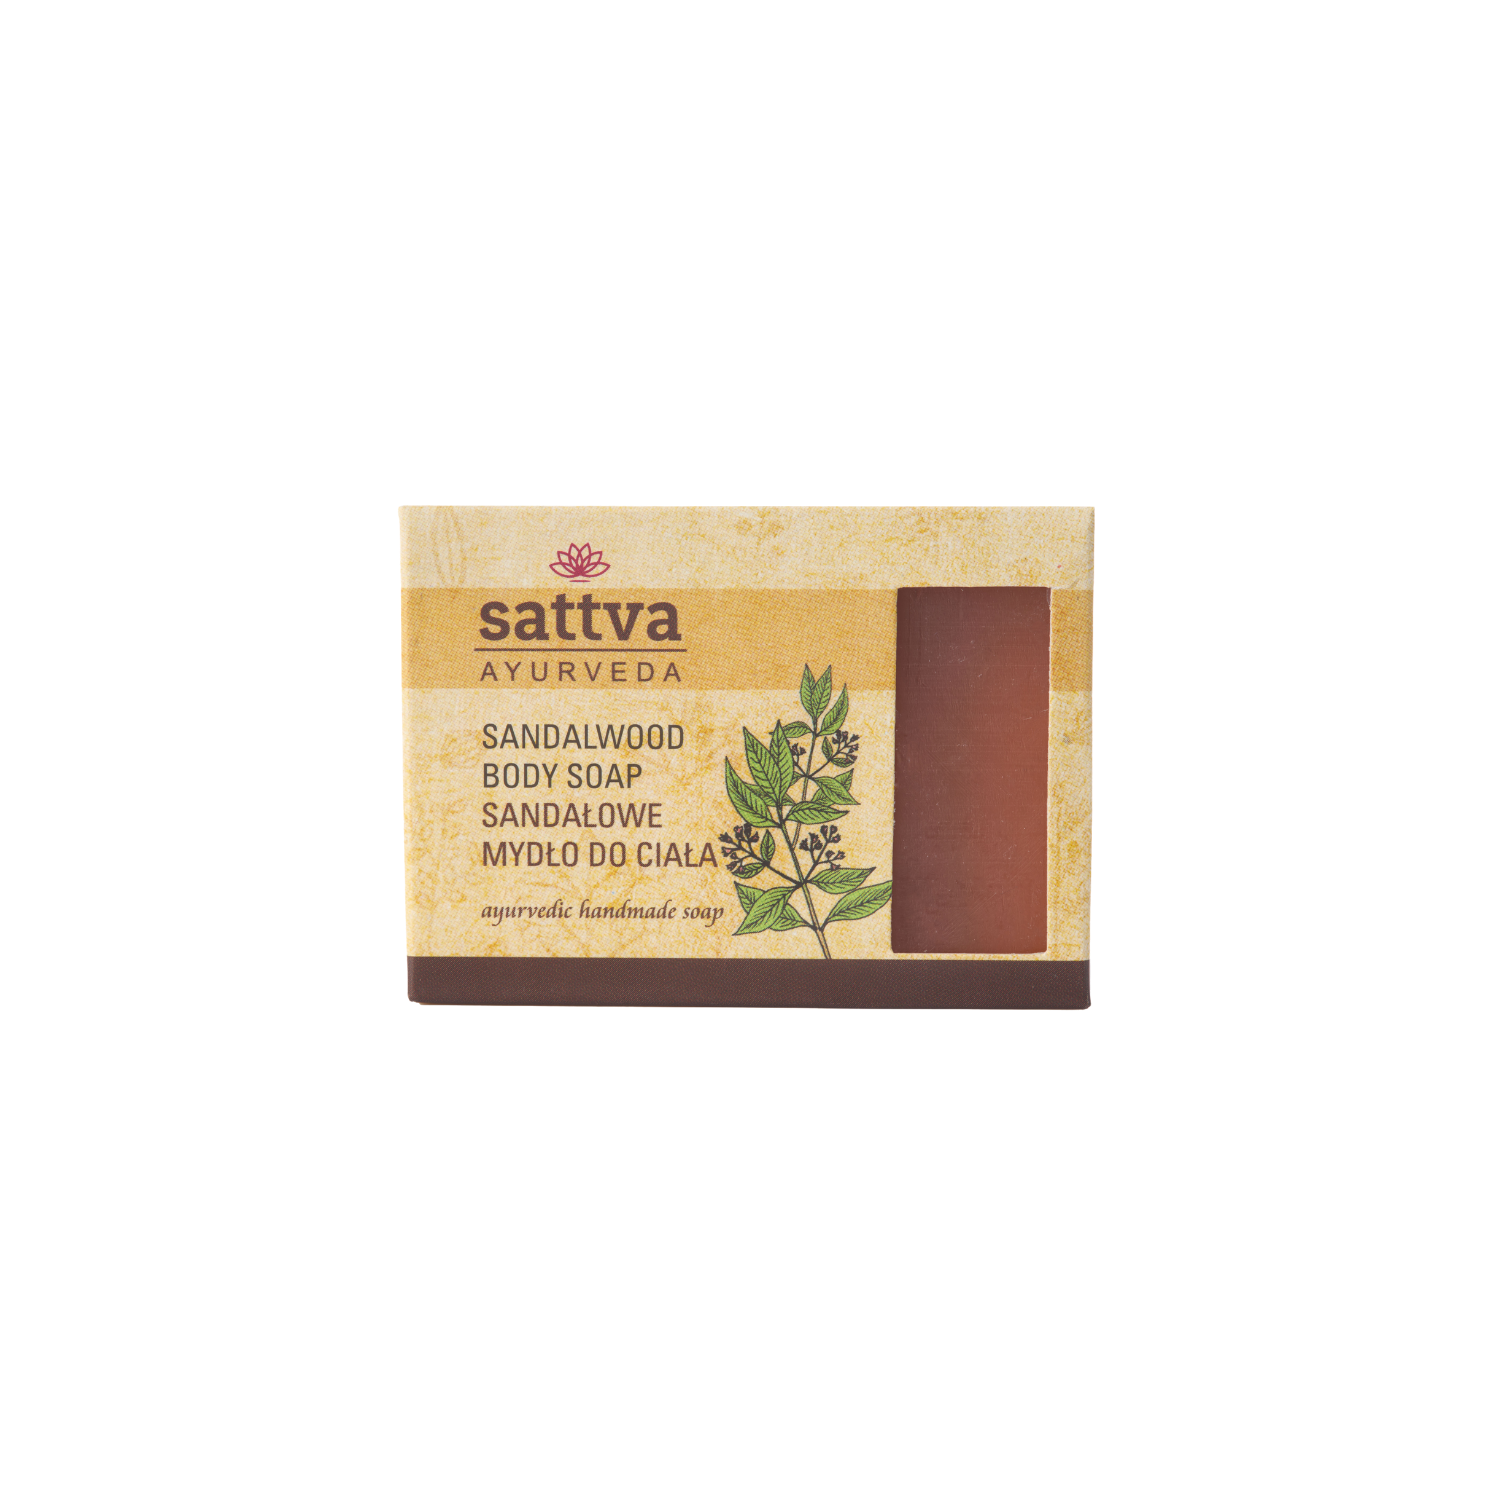 Мыло для тела Sattva, 125 гр sappo hill глицериновое крем мыло натуральное без запаха 12 брусков по 3 5 унций 100 г